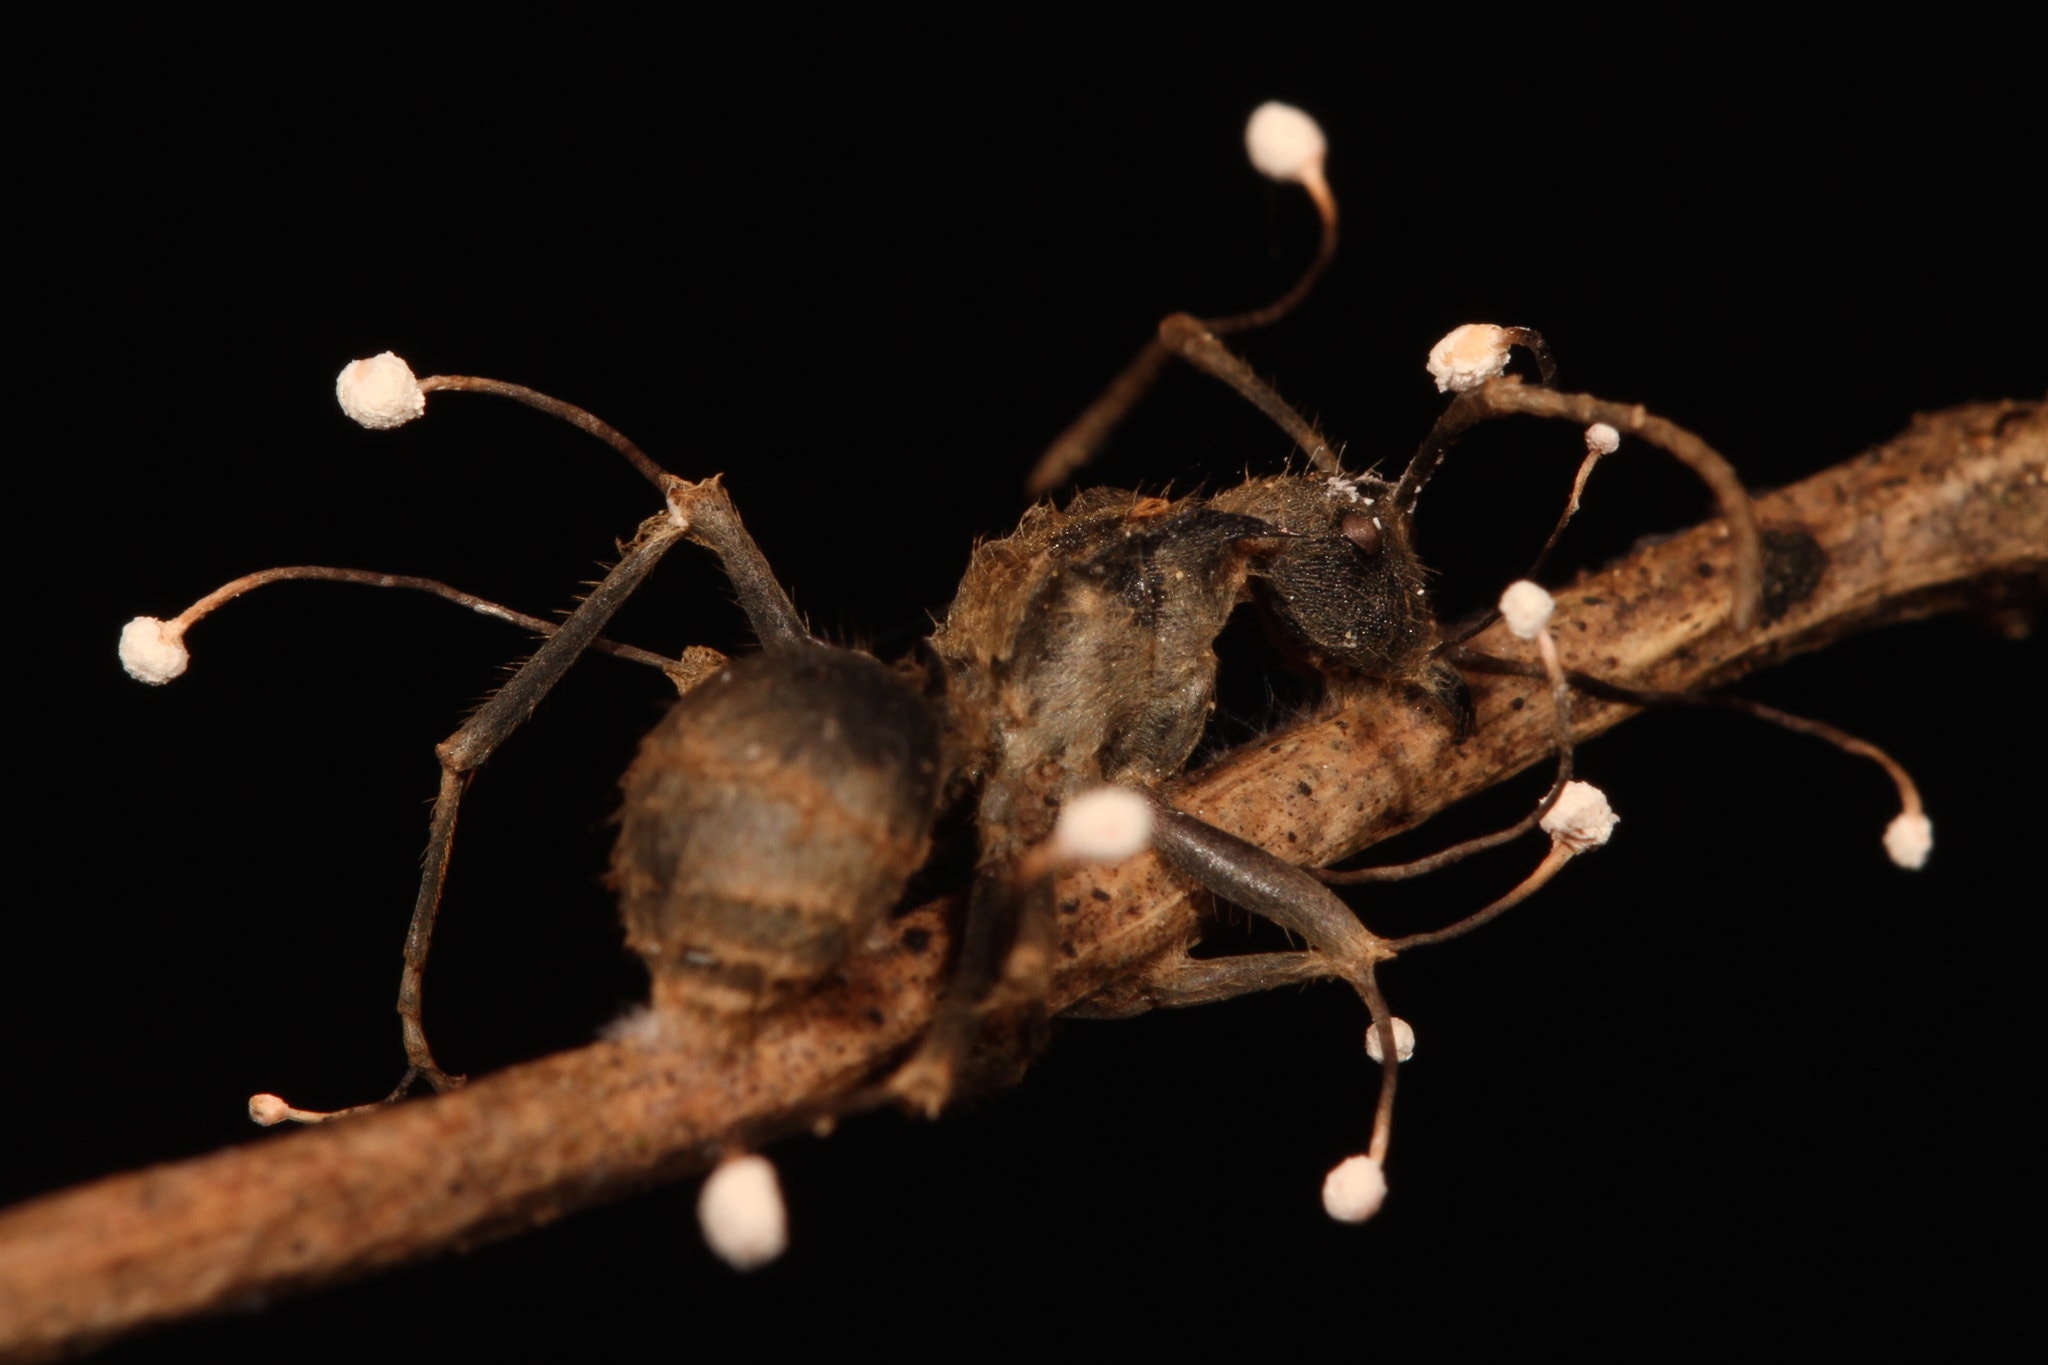 Паразитичний гриб Ophiocordyceps buquetii, проростаючи крізь тіло мурахи, змушує її поводитися нетипово, щоб забезпечити краще розповсюдження своїх спор. João Araújo / The New York Times